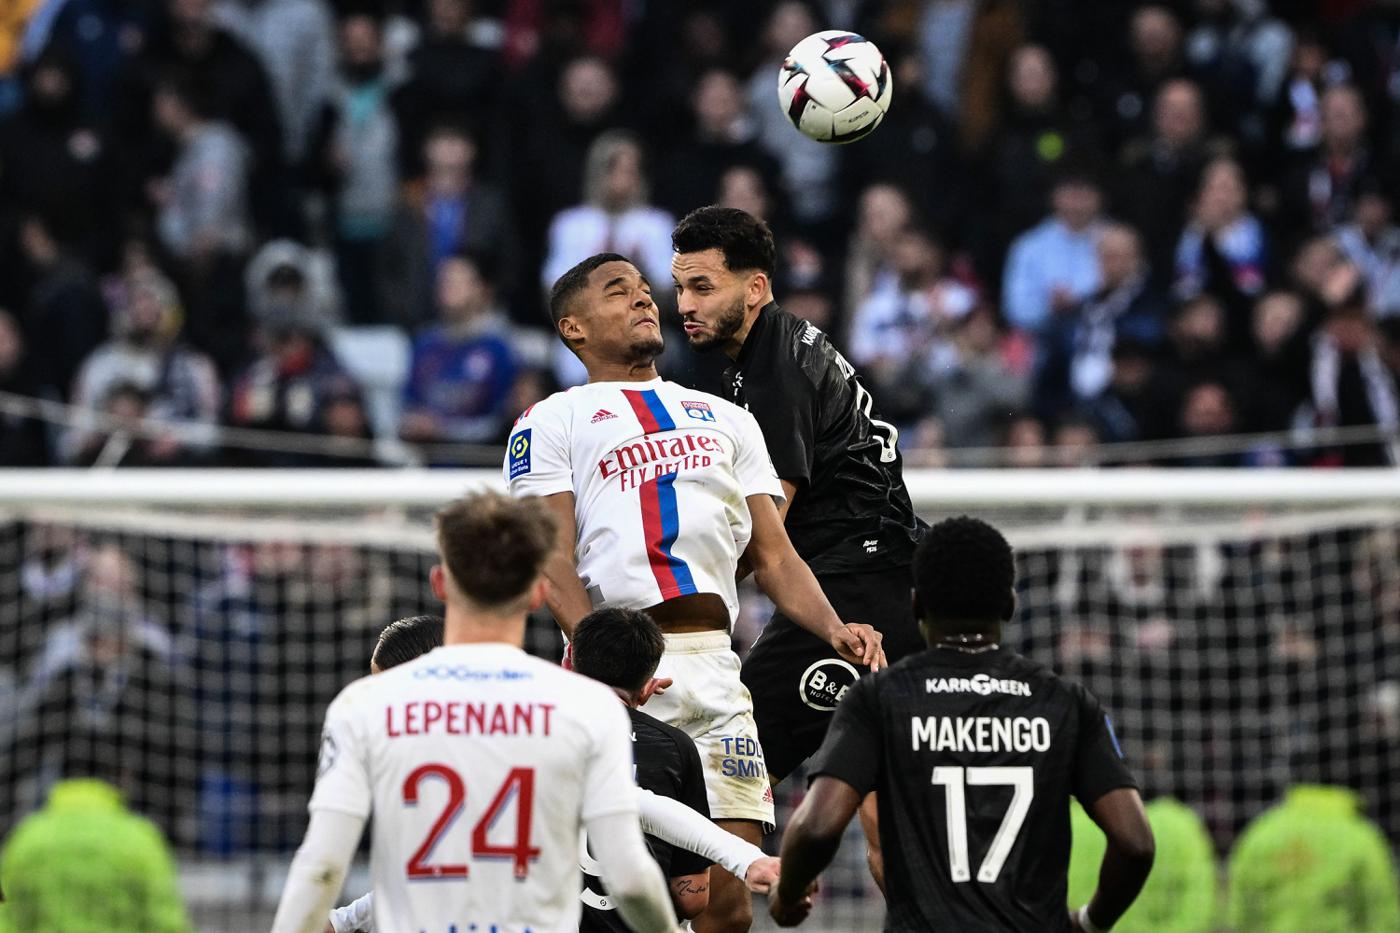 Lyon v Lorient - 0-0. Mistrzostwa Francji, runda 26. Przegląd meczu, statystyki